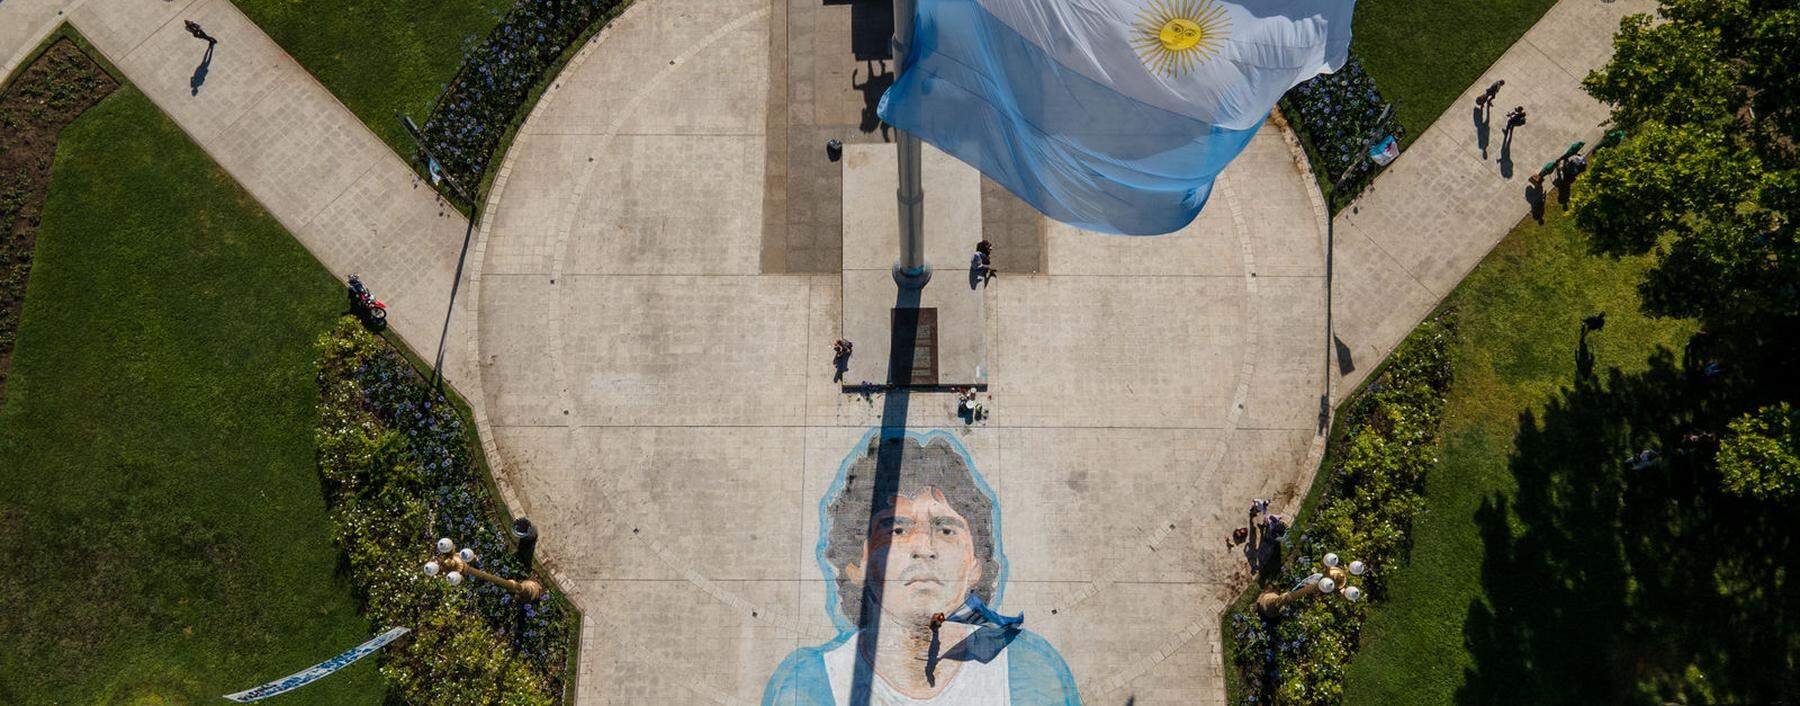 Der Platz vor dem Präsidentenpalast Casa Rosada in Buenos Aires am 26. November 2020, als Diego Maradona dort aufgebahrt und danach beerdigt wurde.